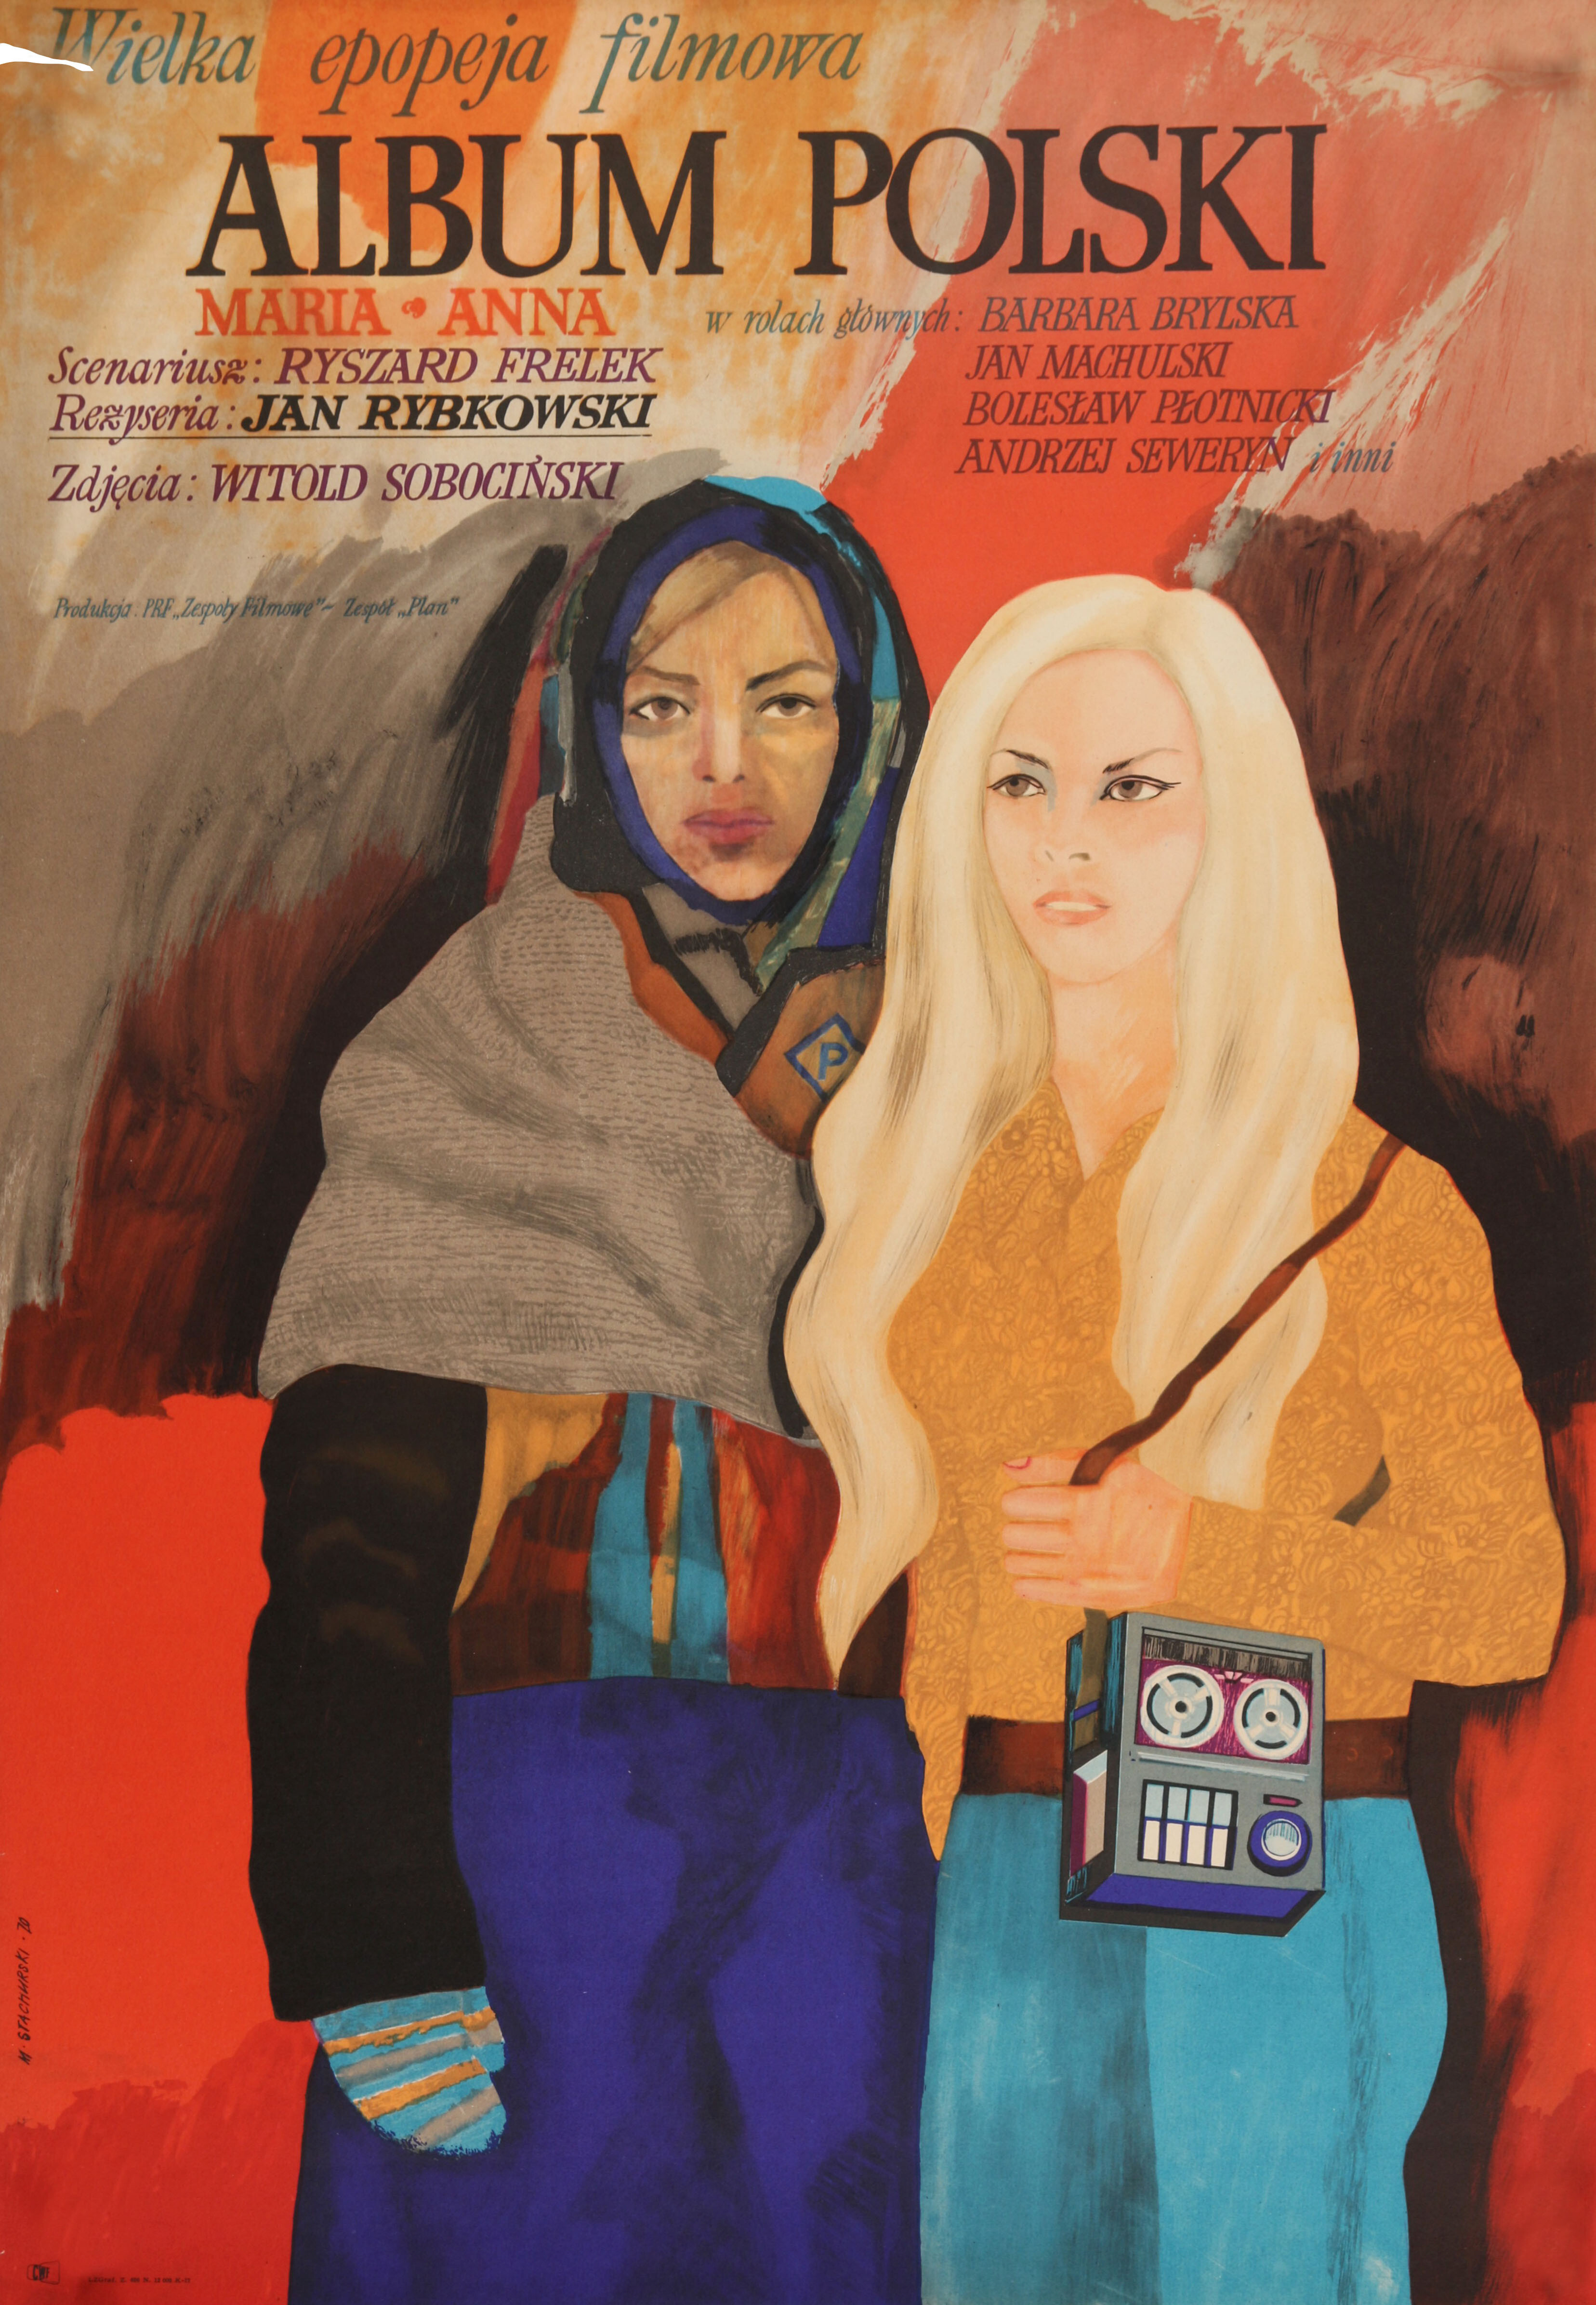 Польский альбом (Album polski, 1970), режиссёр Ян Рыбковски, художественный постер к фильму (Польша, 1970 год), автор Мариан Стачурски